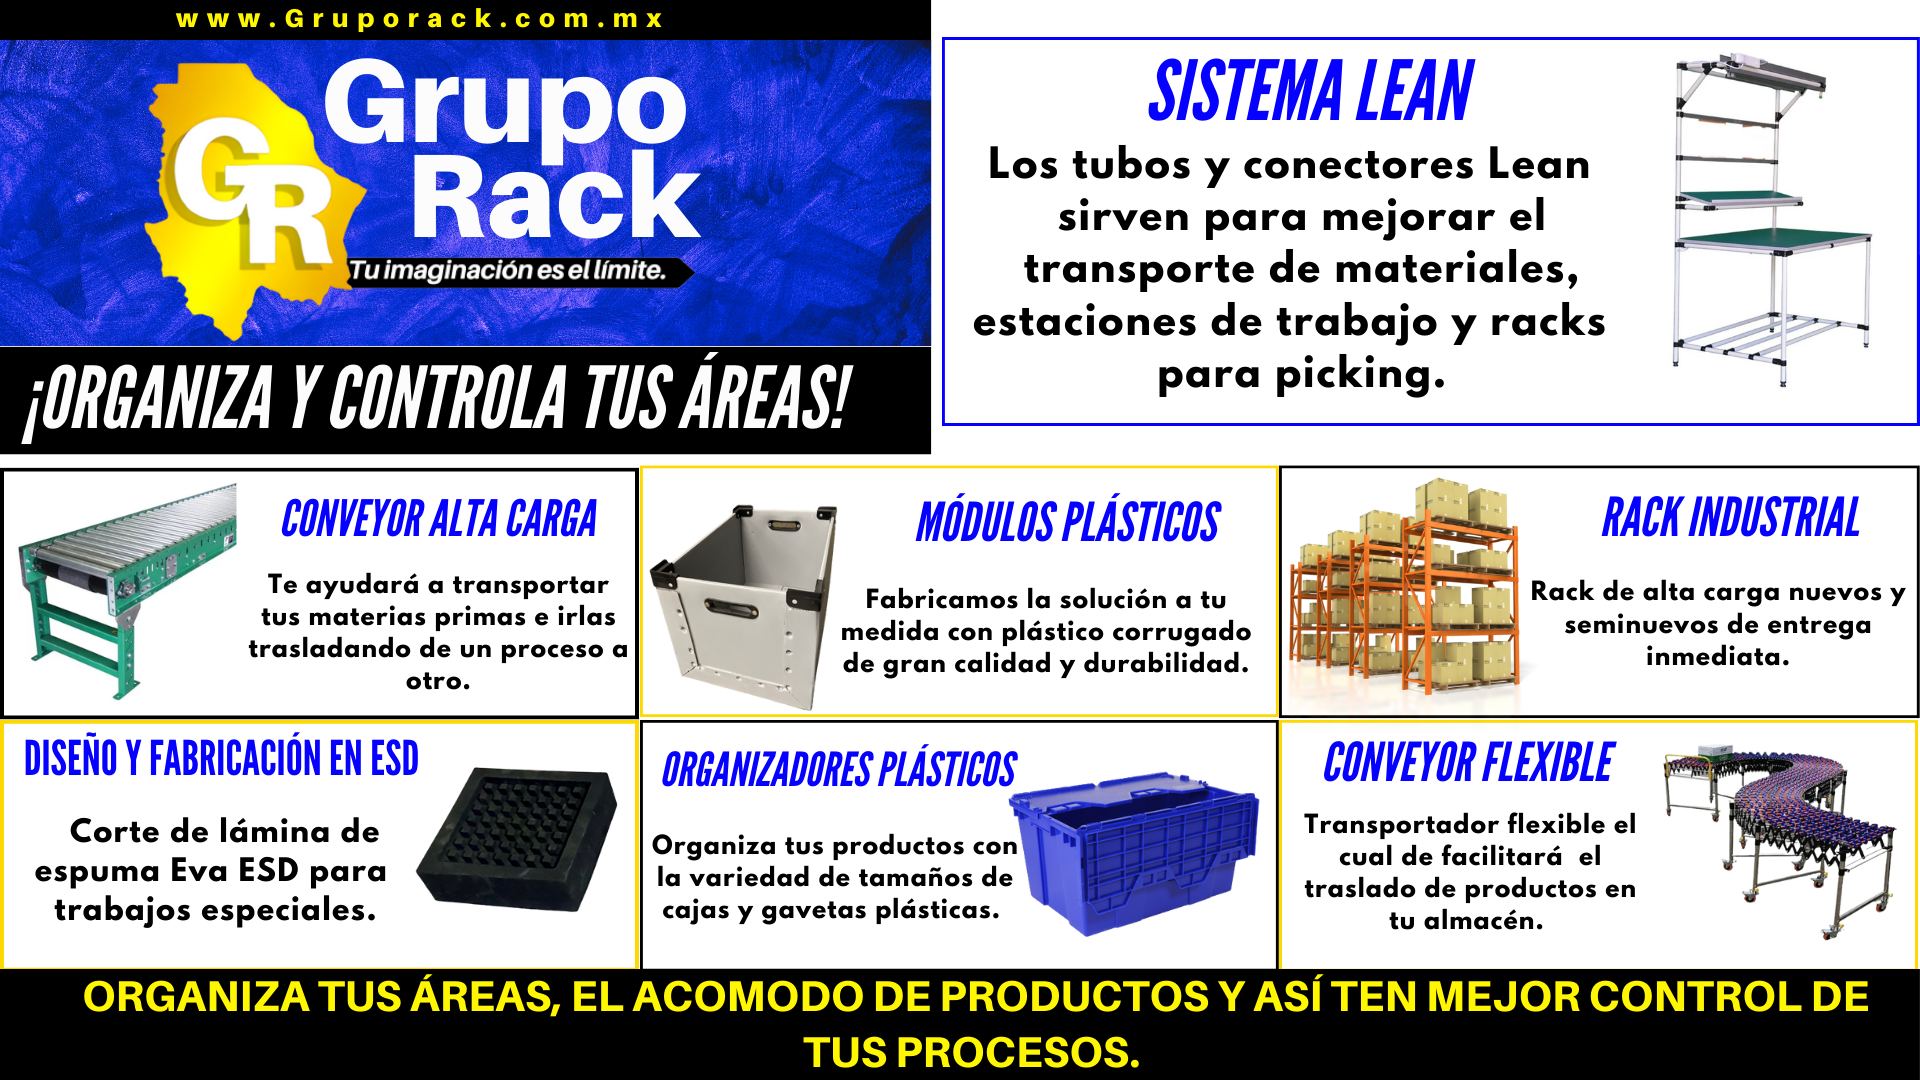 GRUPO RACK rack industrial tubing lean conveyor cajas plásticas plástico corrugado foam